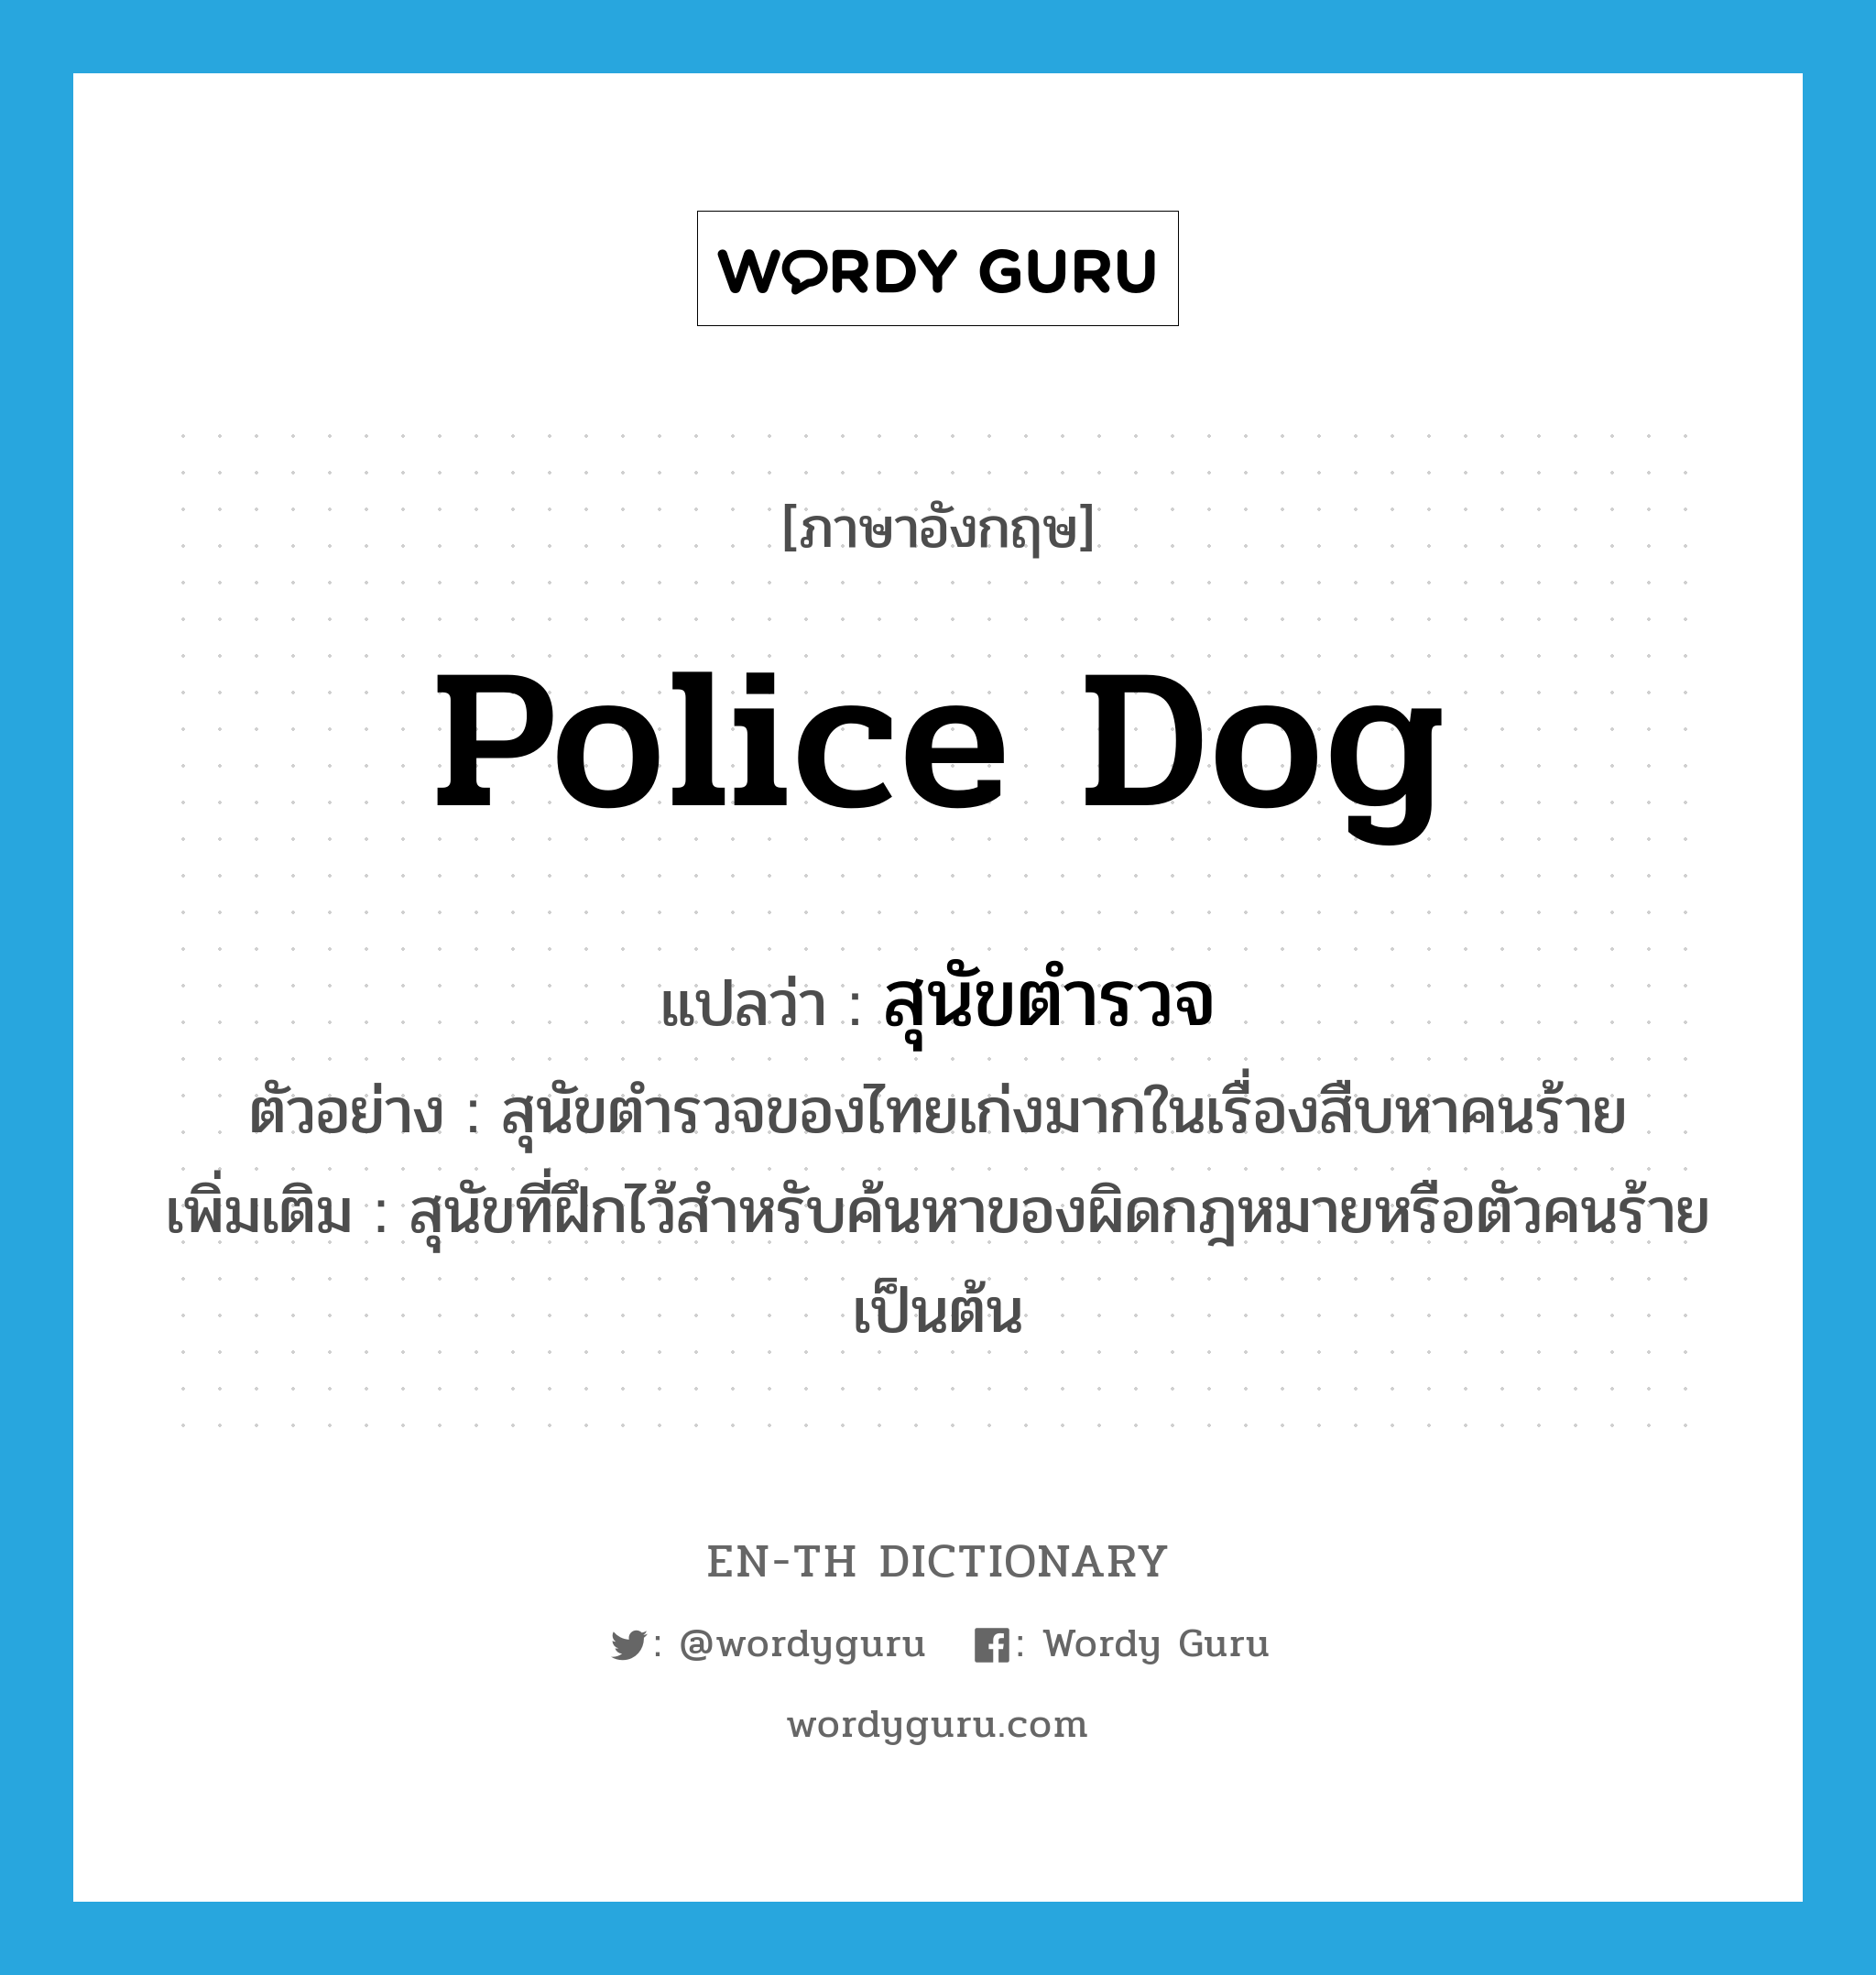 police dog แปลว่า?, คำศัพท์ภาษาอังกฤษ police dog แปลว่า สุนัขตำรวจ ประเภท N ตัวอย่าง สุนัขตำรวจของไทยเก่งมากในเรื่องสืบหาคนร้าย เพิ่มเติม สุนัขที่ฝึกไว้สำหรับค้นหาของผิดกฎหมายหรือตัวคนร้ายเป็นต้น หมวด N